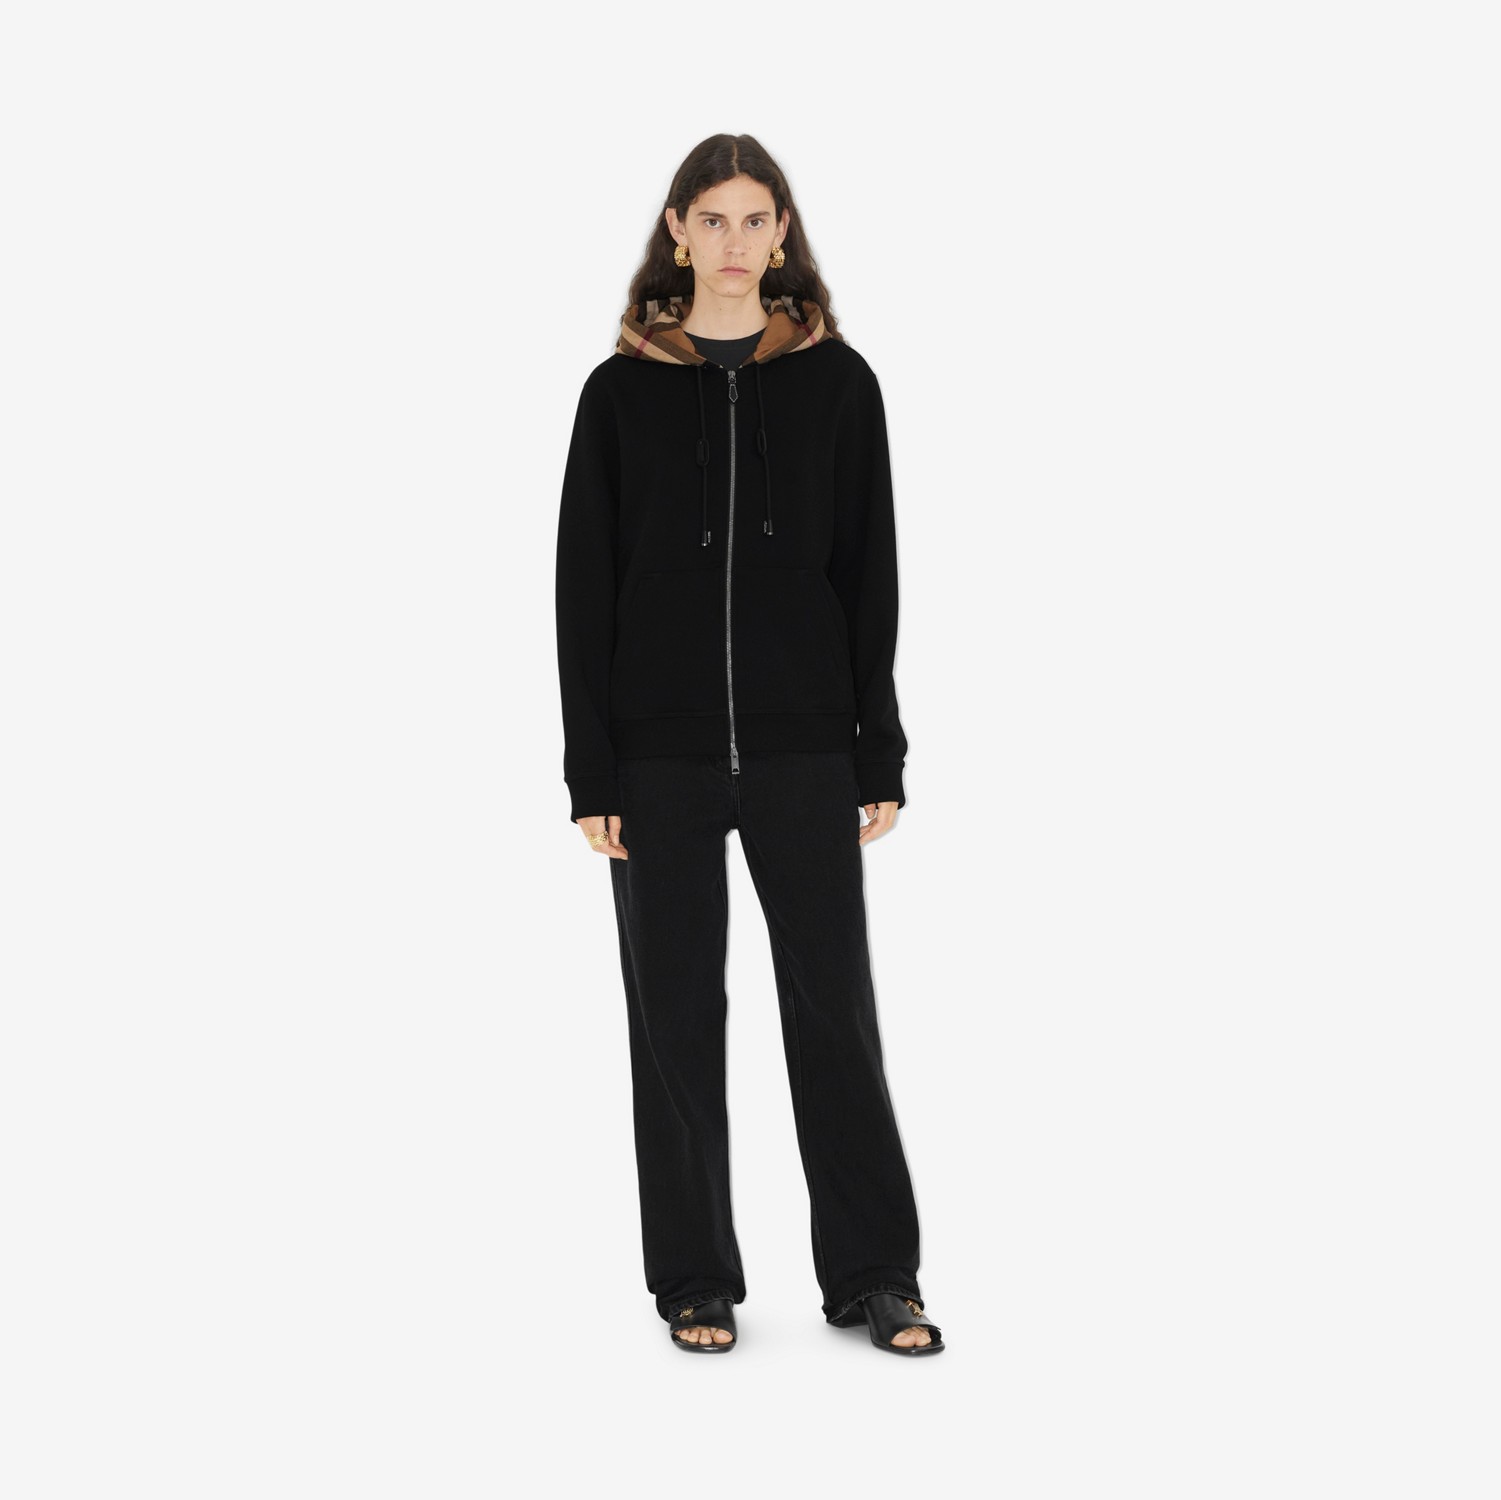 Sudadera en algodón con cremallera, capucha y detalles Check (Negro) - Mujer | Burberry® oficial